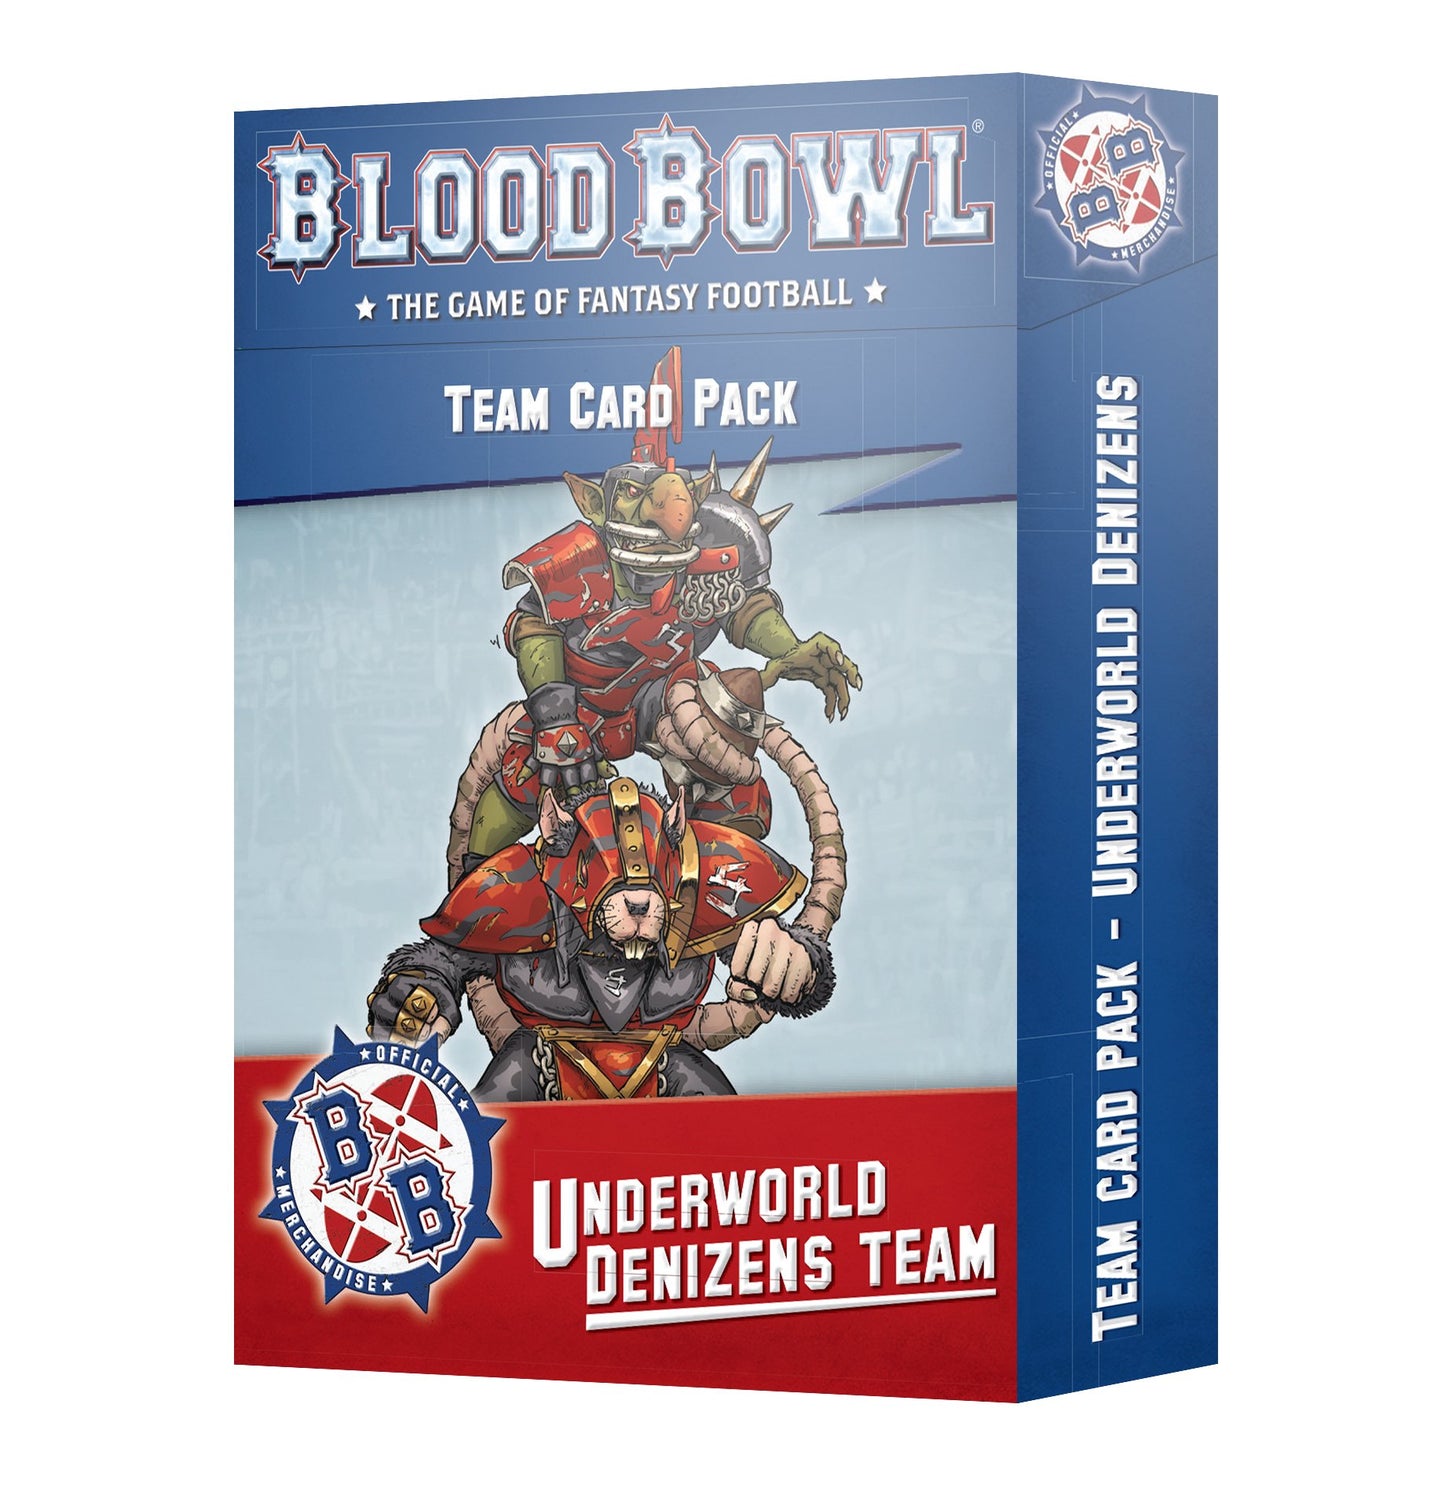 OUT - Bllod Bowl: Underworld Denizens Team Card Pack